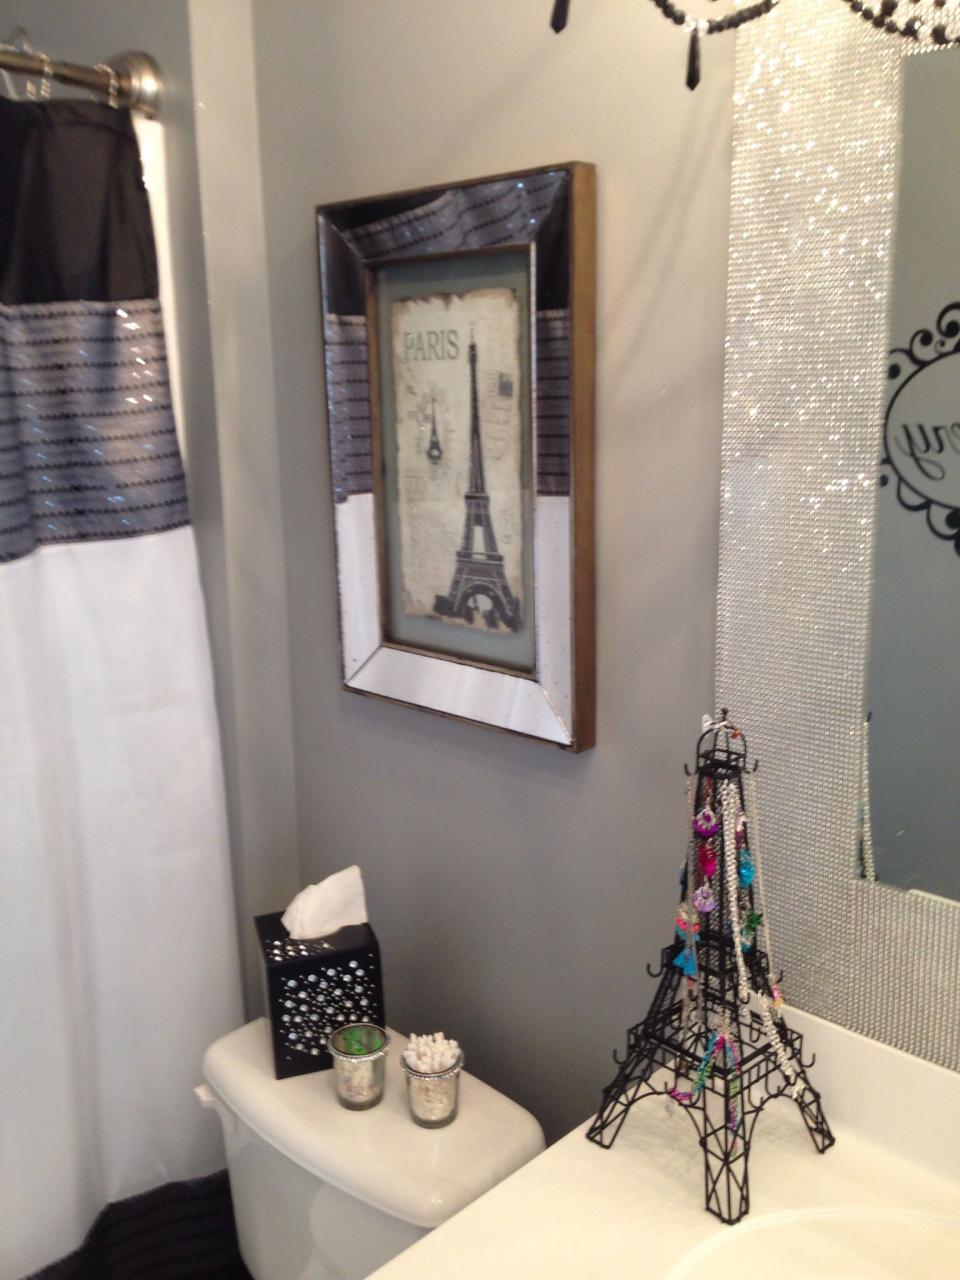 Paris themed Bathroom Decor 2021 in 2020 Paris bathroom decor, Paris